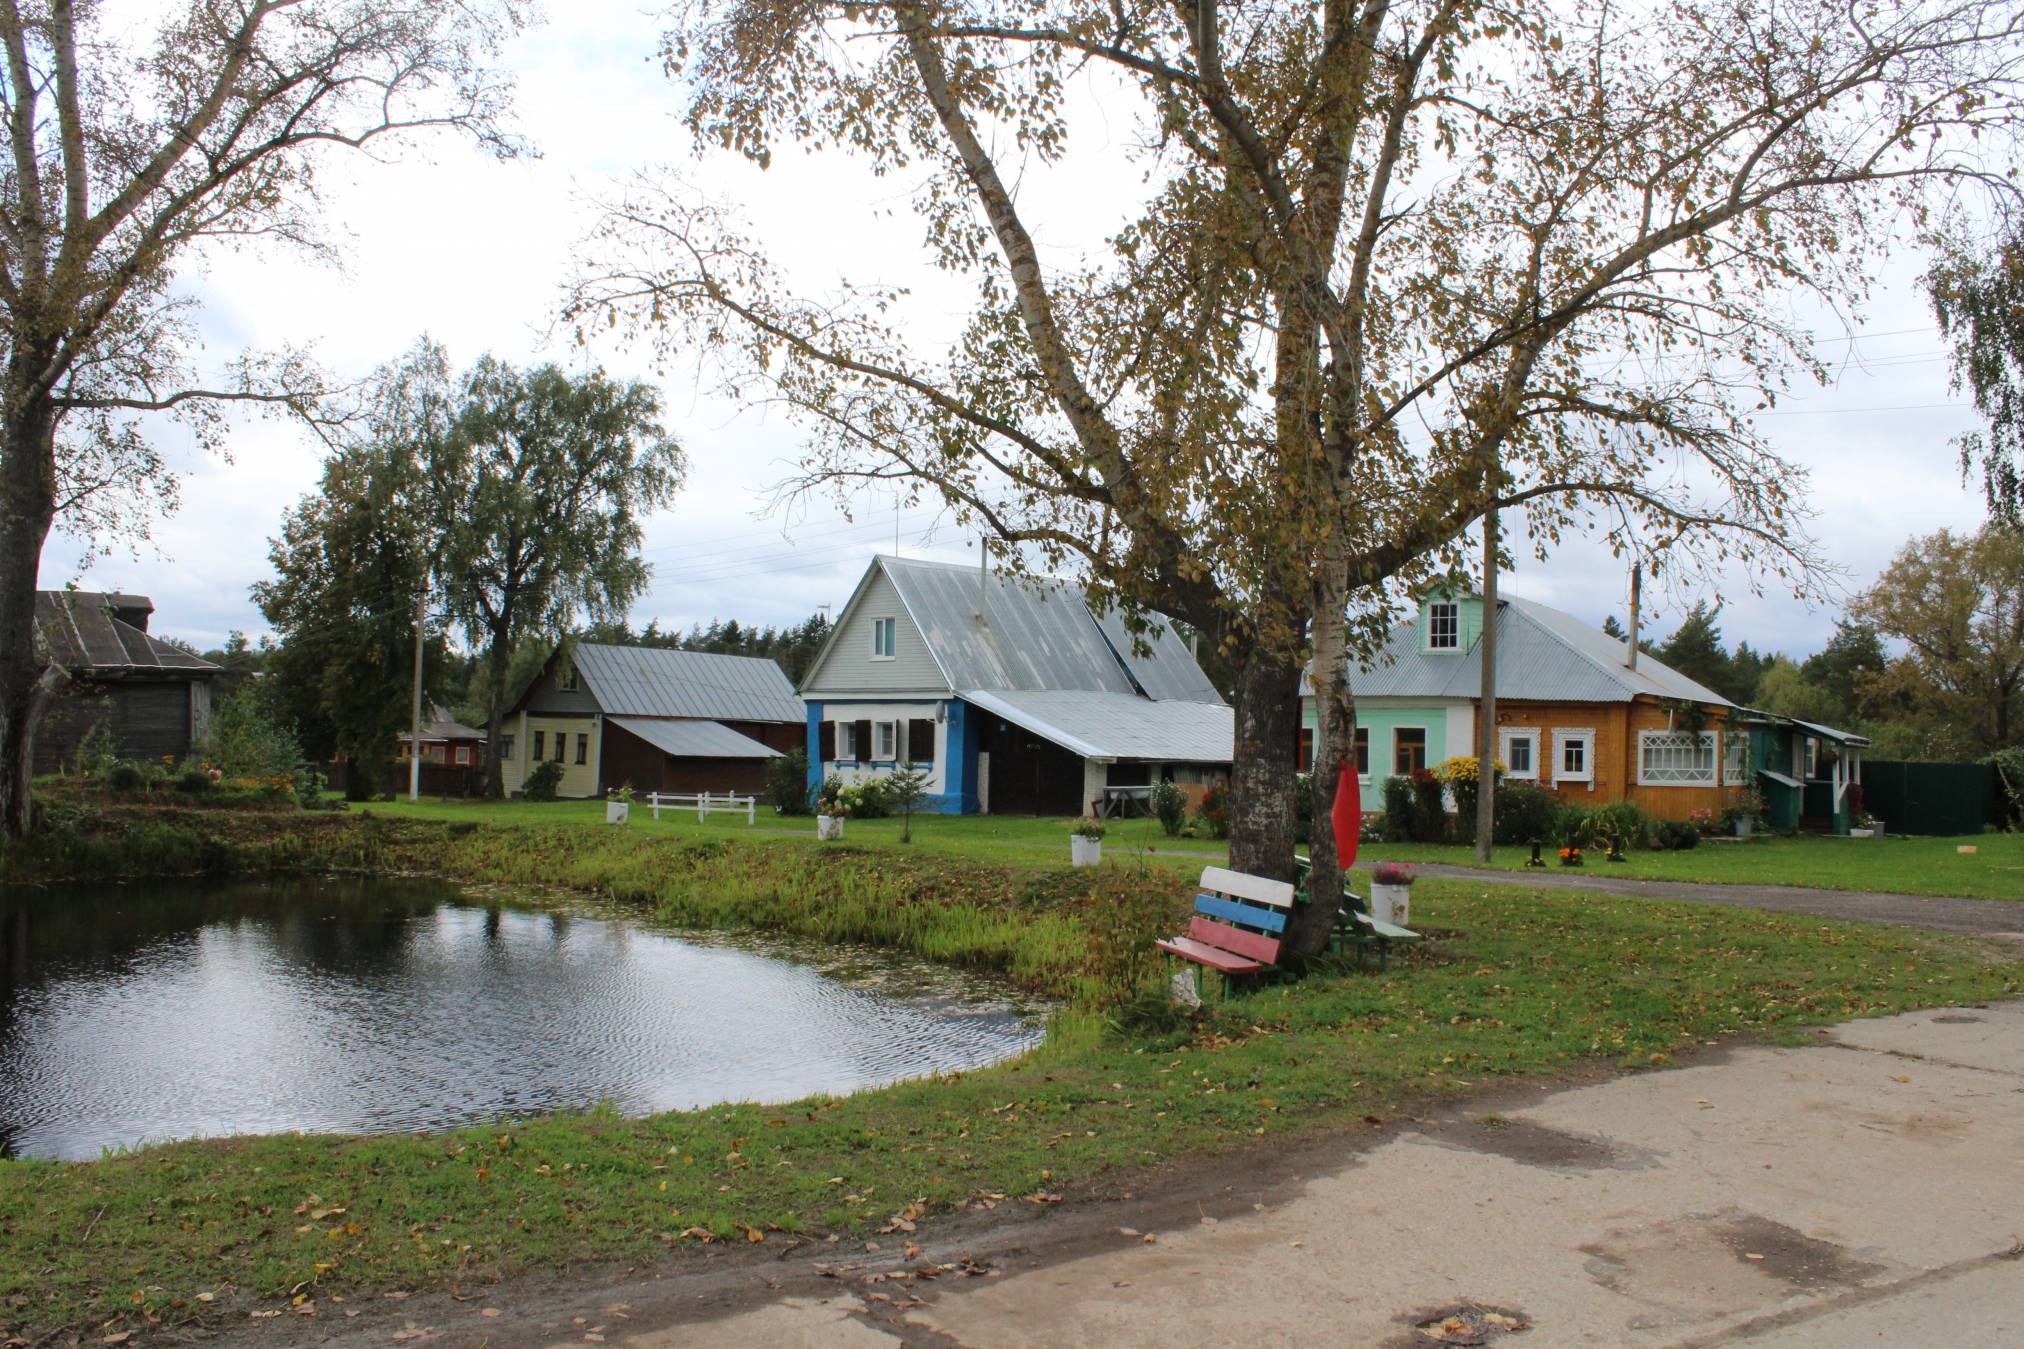 Конкурс «Самая красивая деревня Владимирской области-2020» начался. Победителям вручат 150 000 рублей